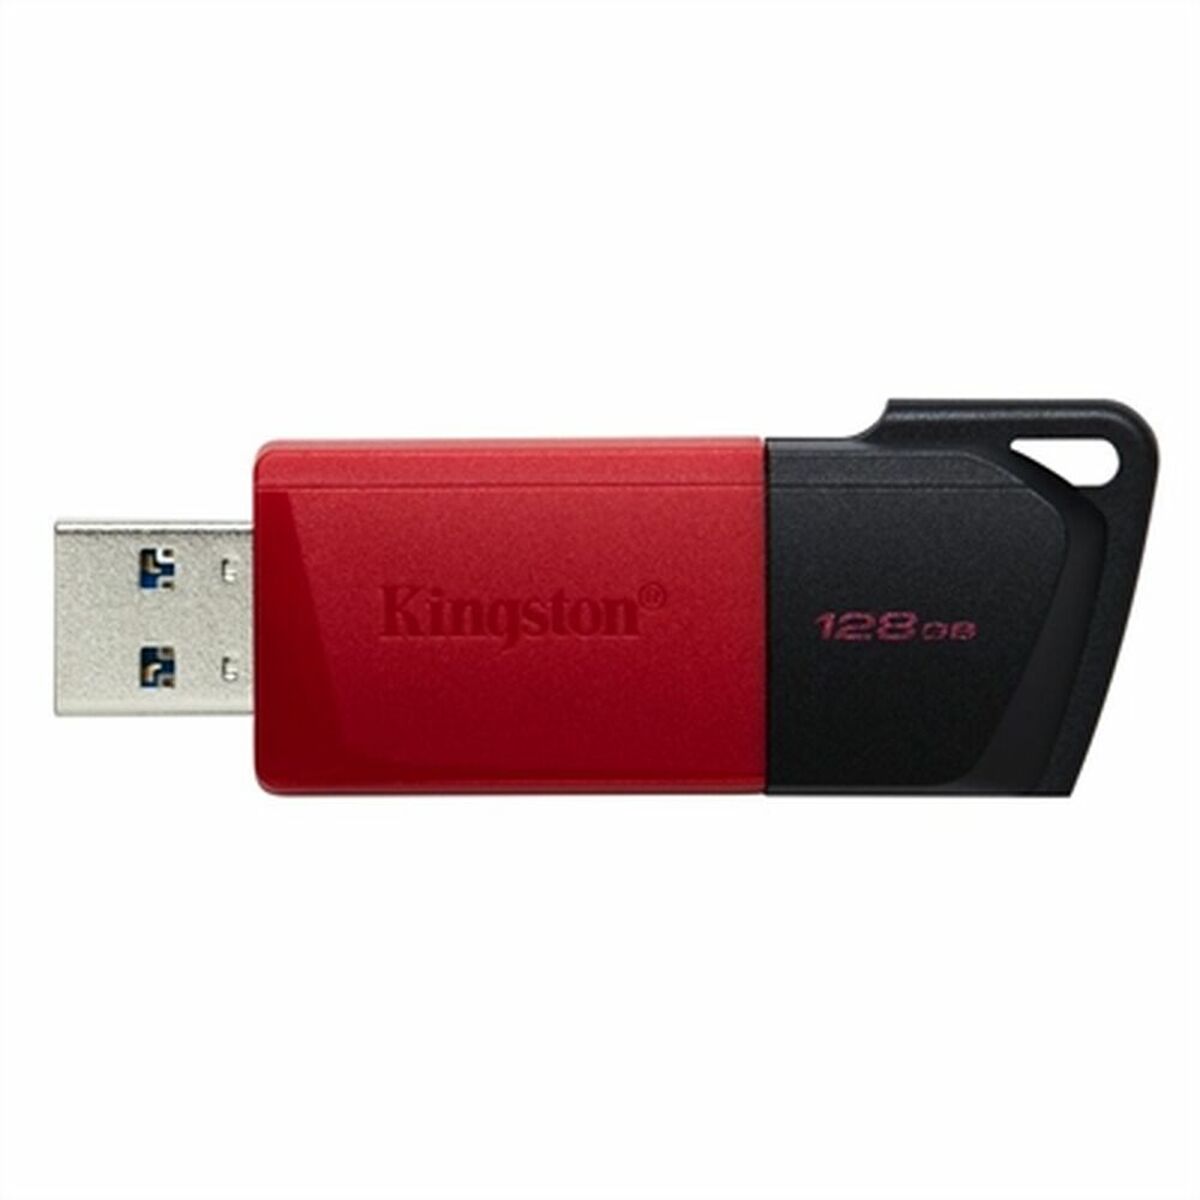 Kingston DTXM 128 GB USB-Stick 128 GB